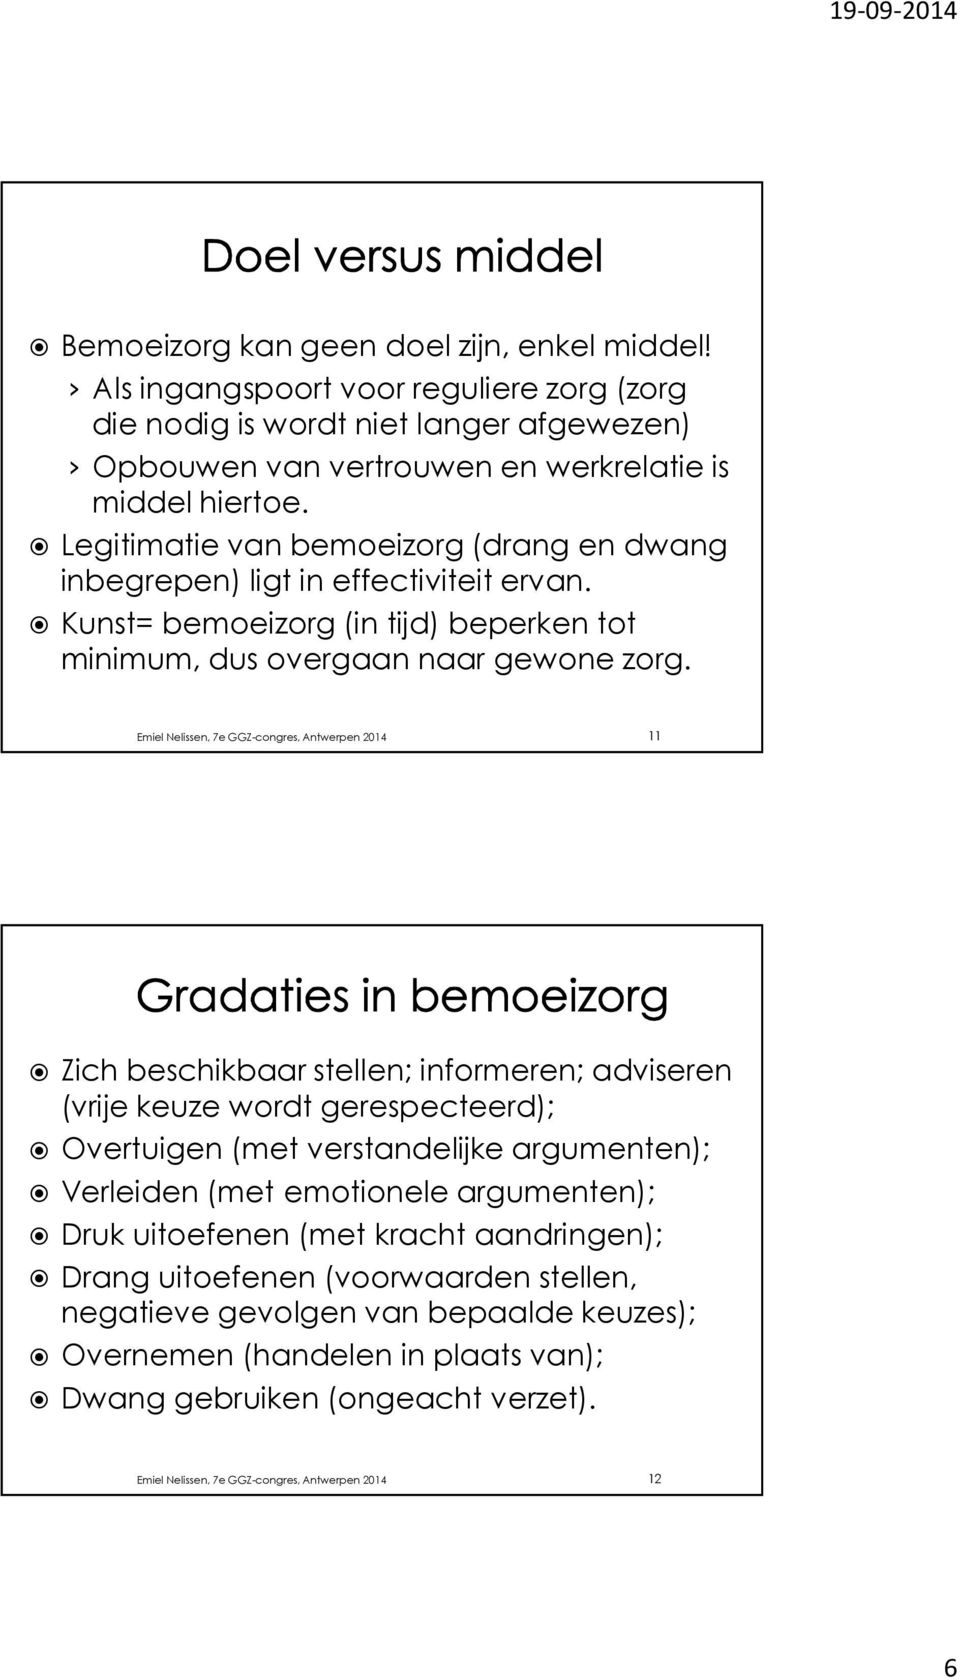 Emiel Nelissen, 7e GGZ-congres, Antwerpen 2014 11 Zich beschikbaar stellen; informeren; adviseren (vrije keuze wordt gerespecteerd); Overtuigen (met verstandelijke argumenten); Verleiden (met